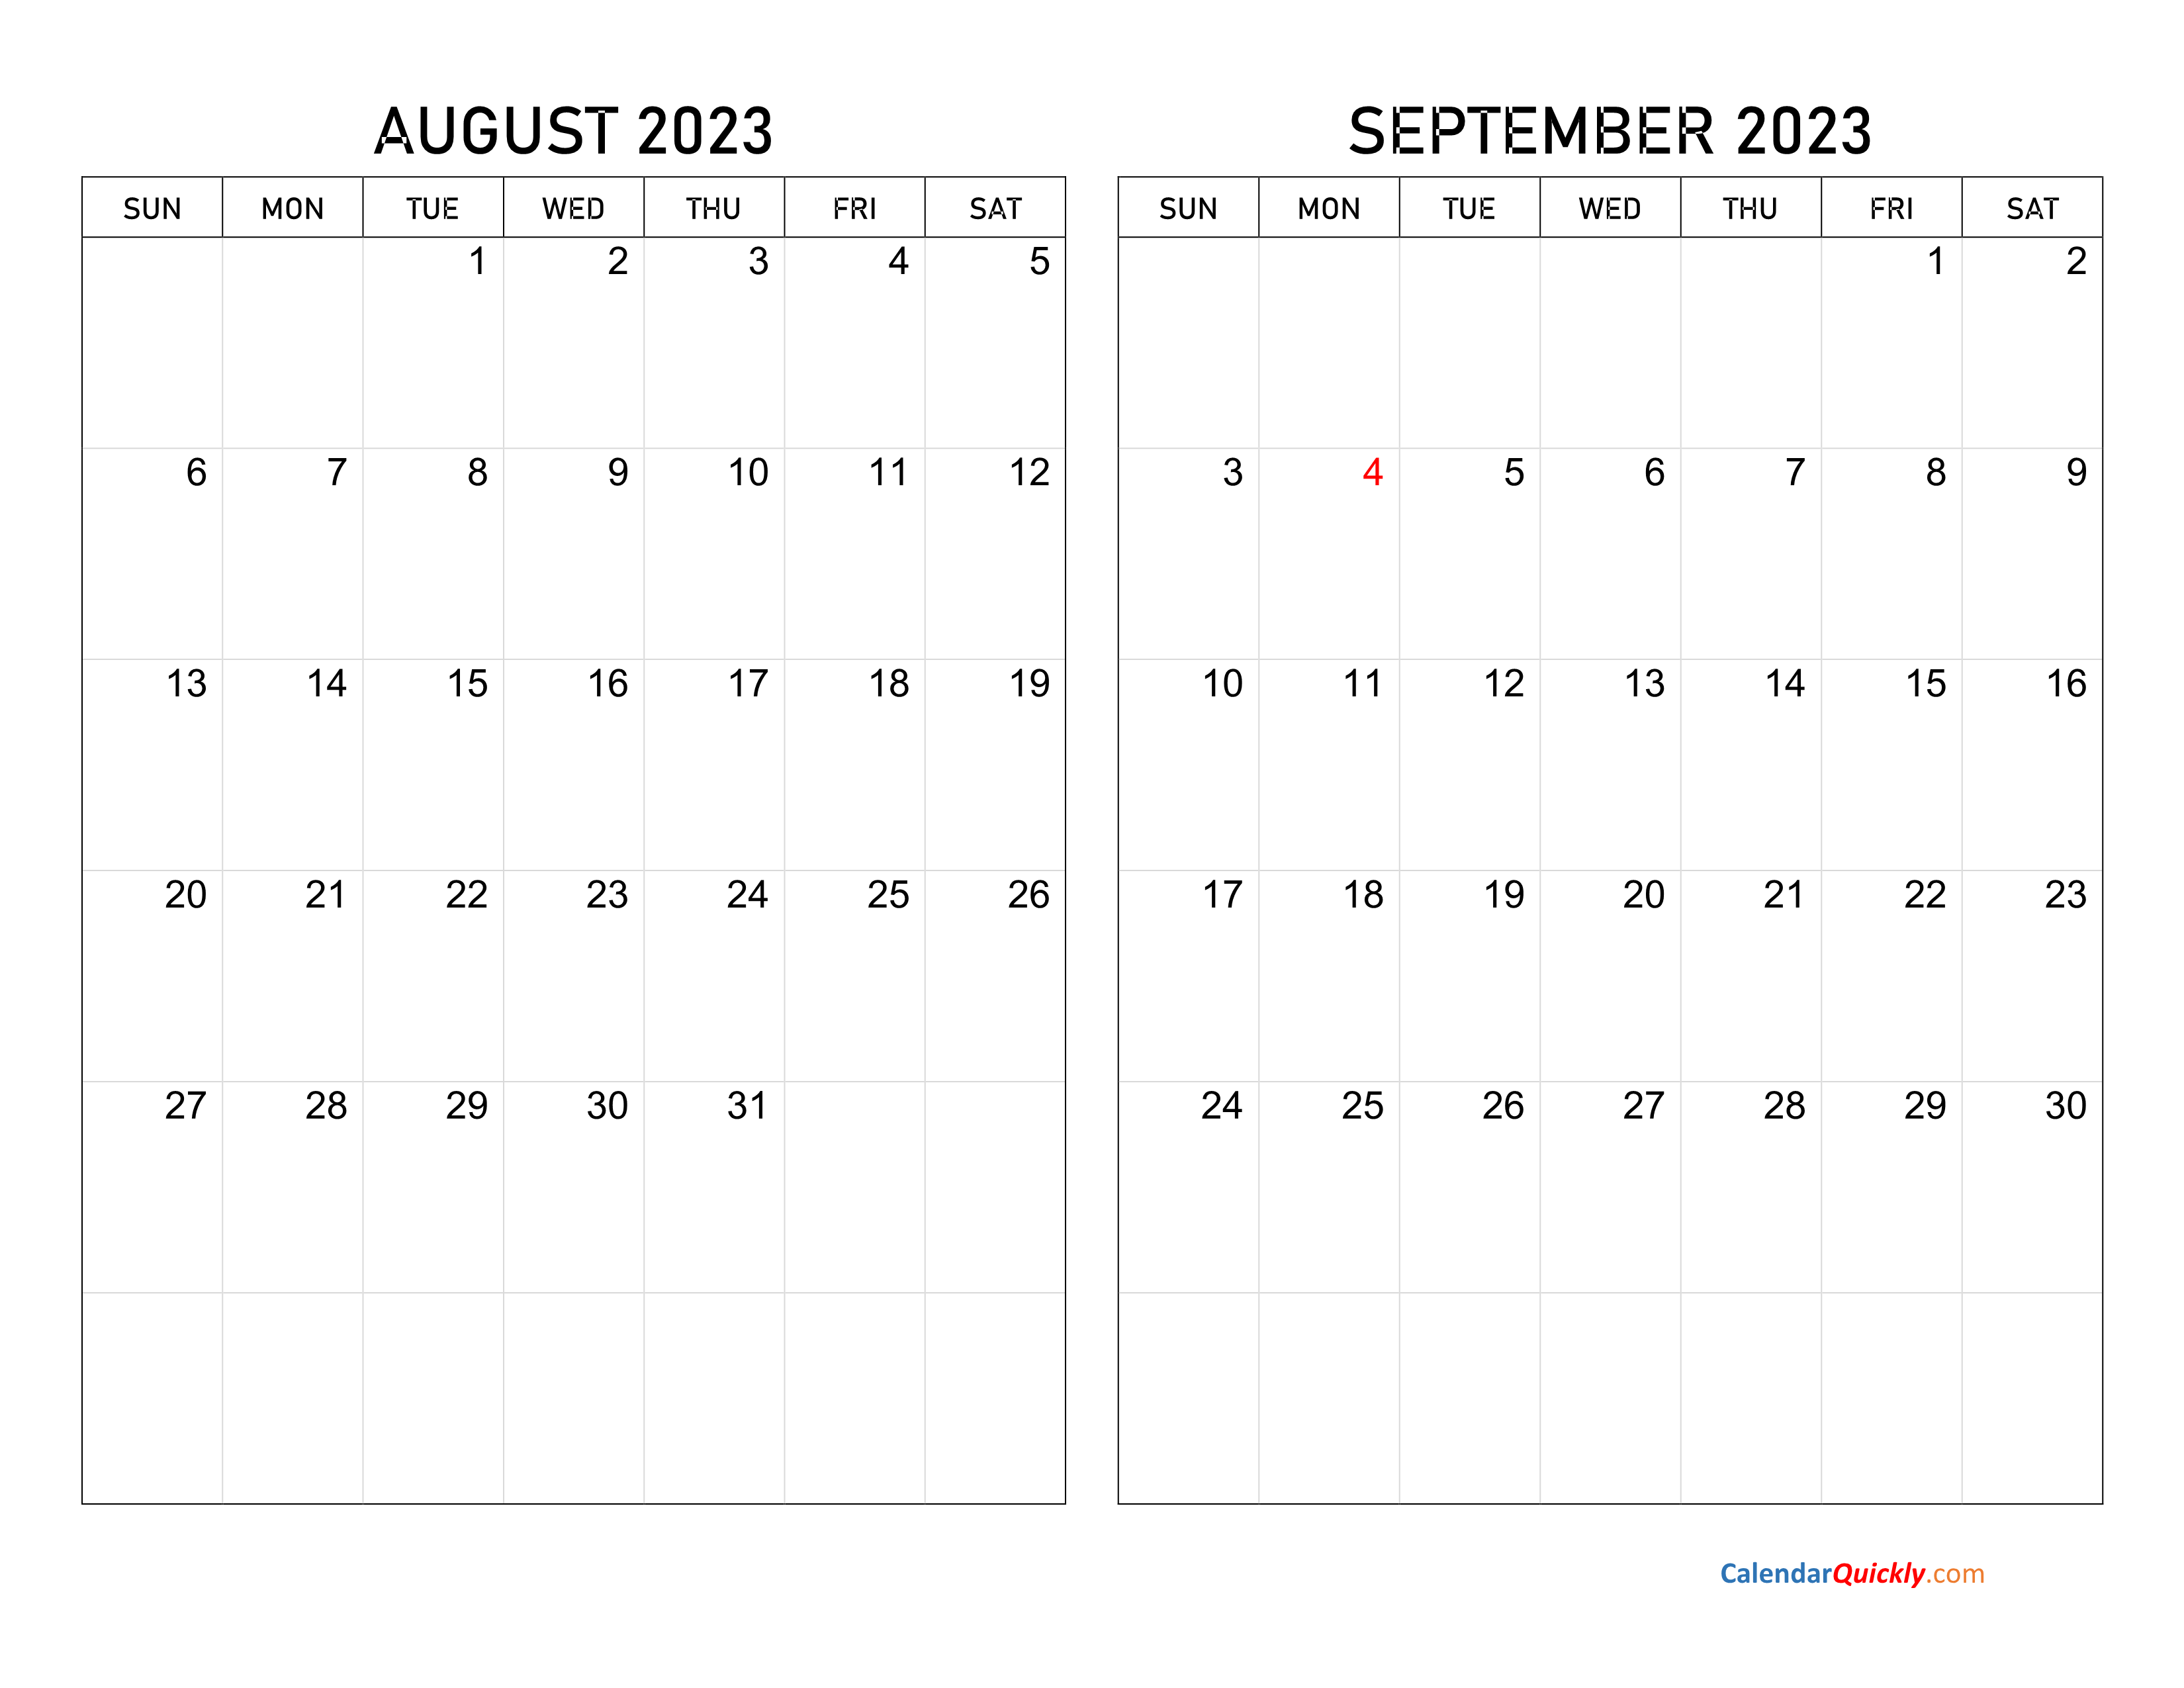 August and September 2023 Calendar Calendar Quickly